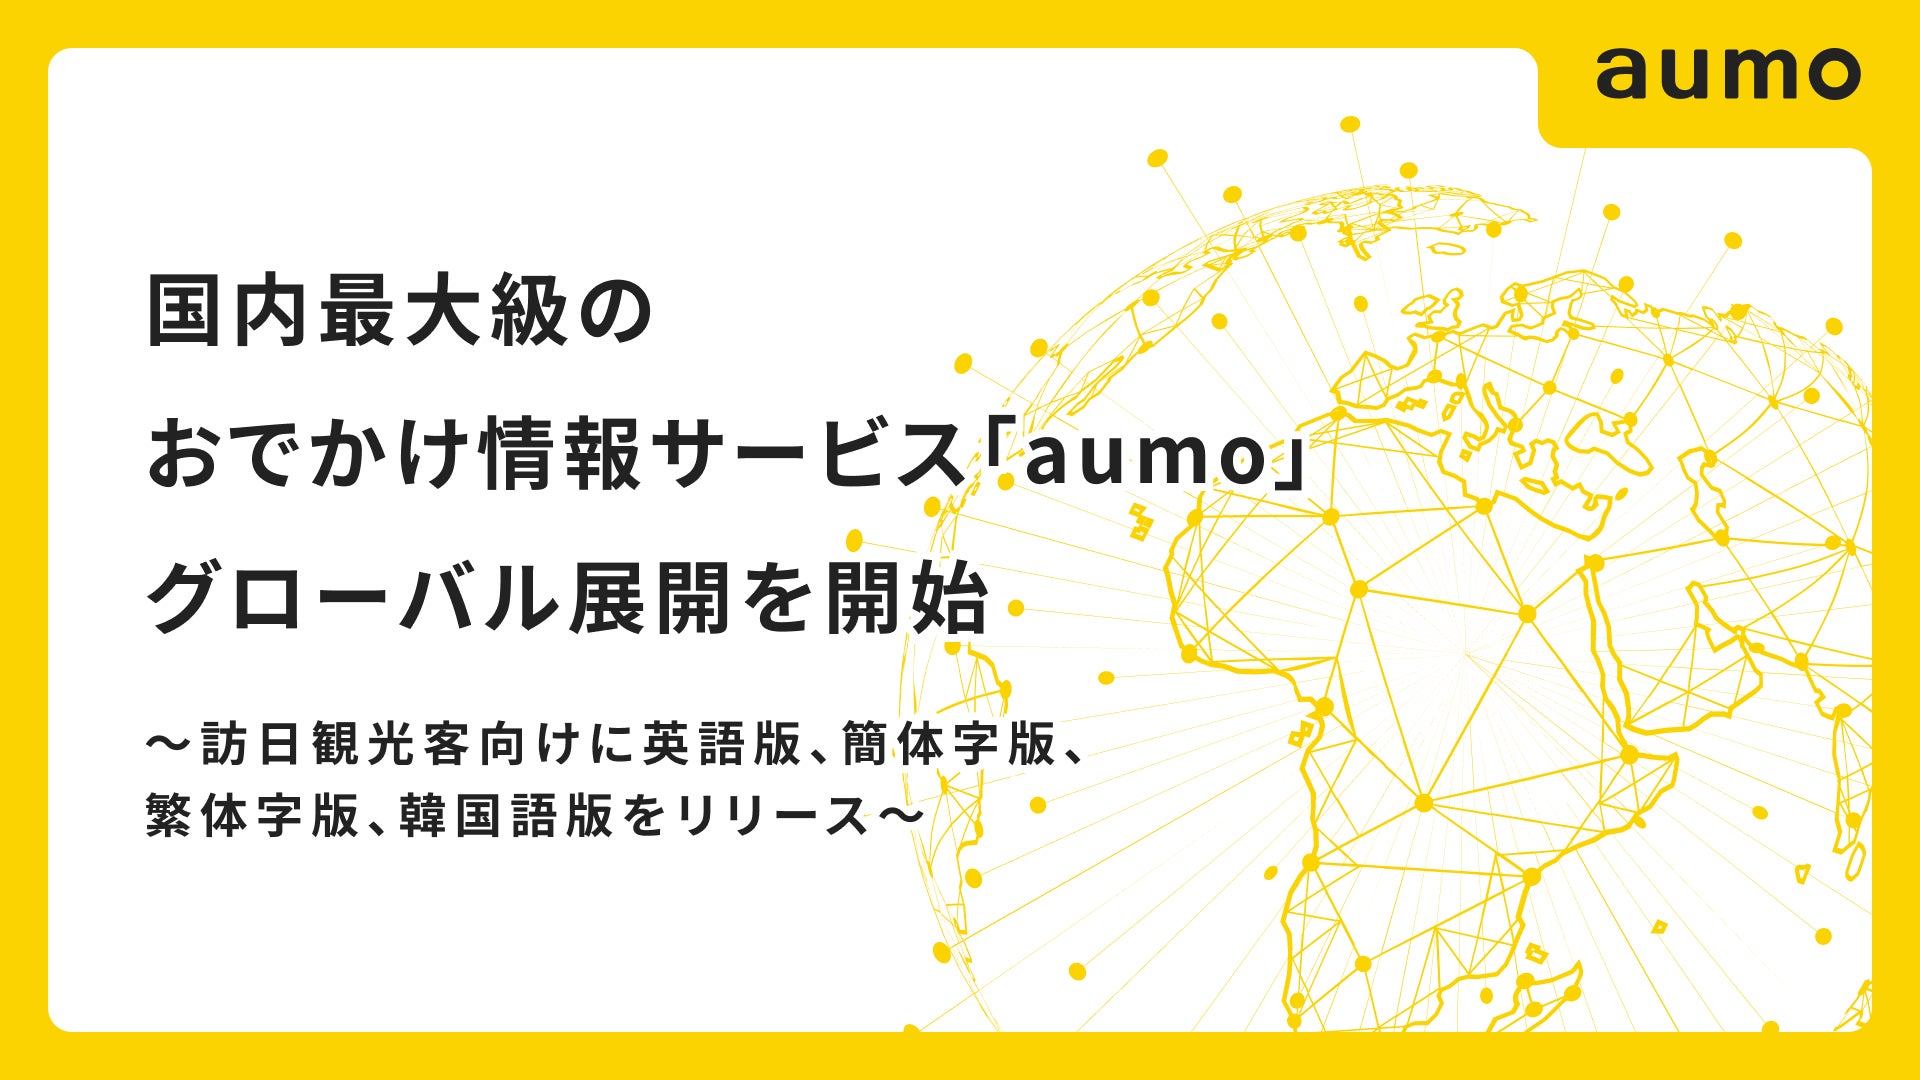 国内最大級のおでかけ情報サービス「aumo」、グローバル展開を開始